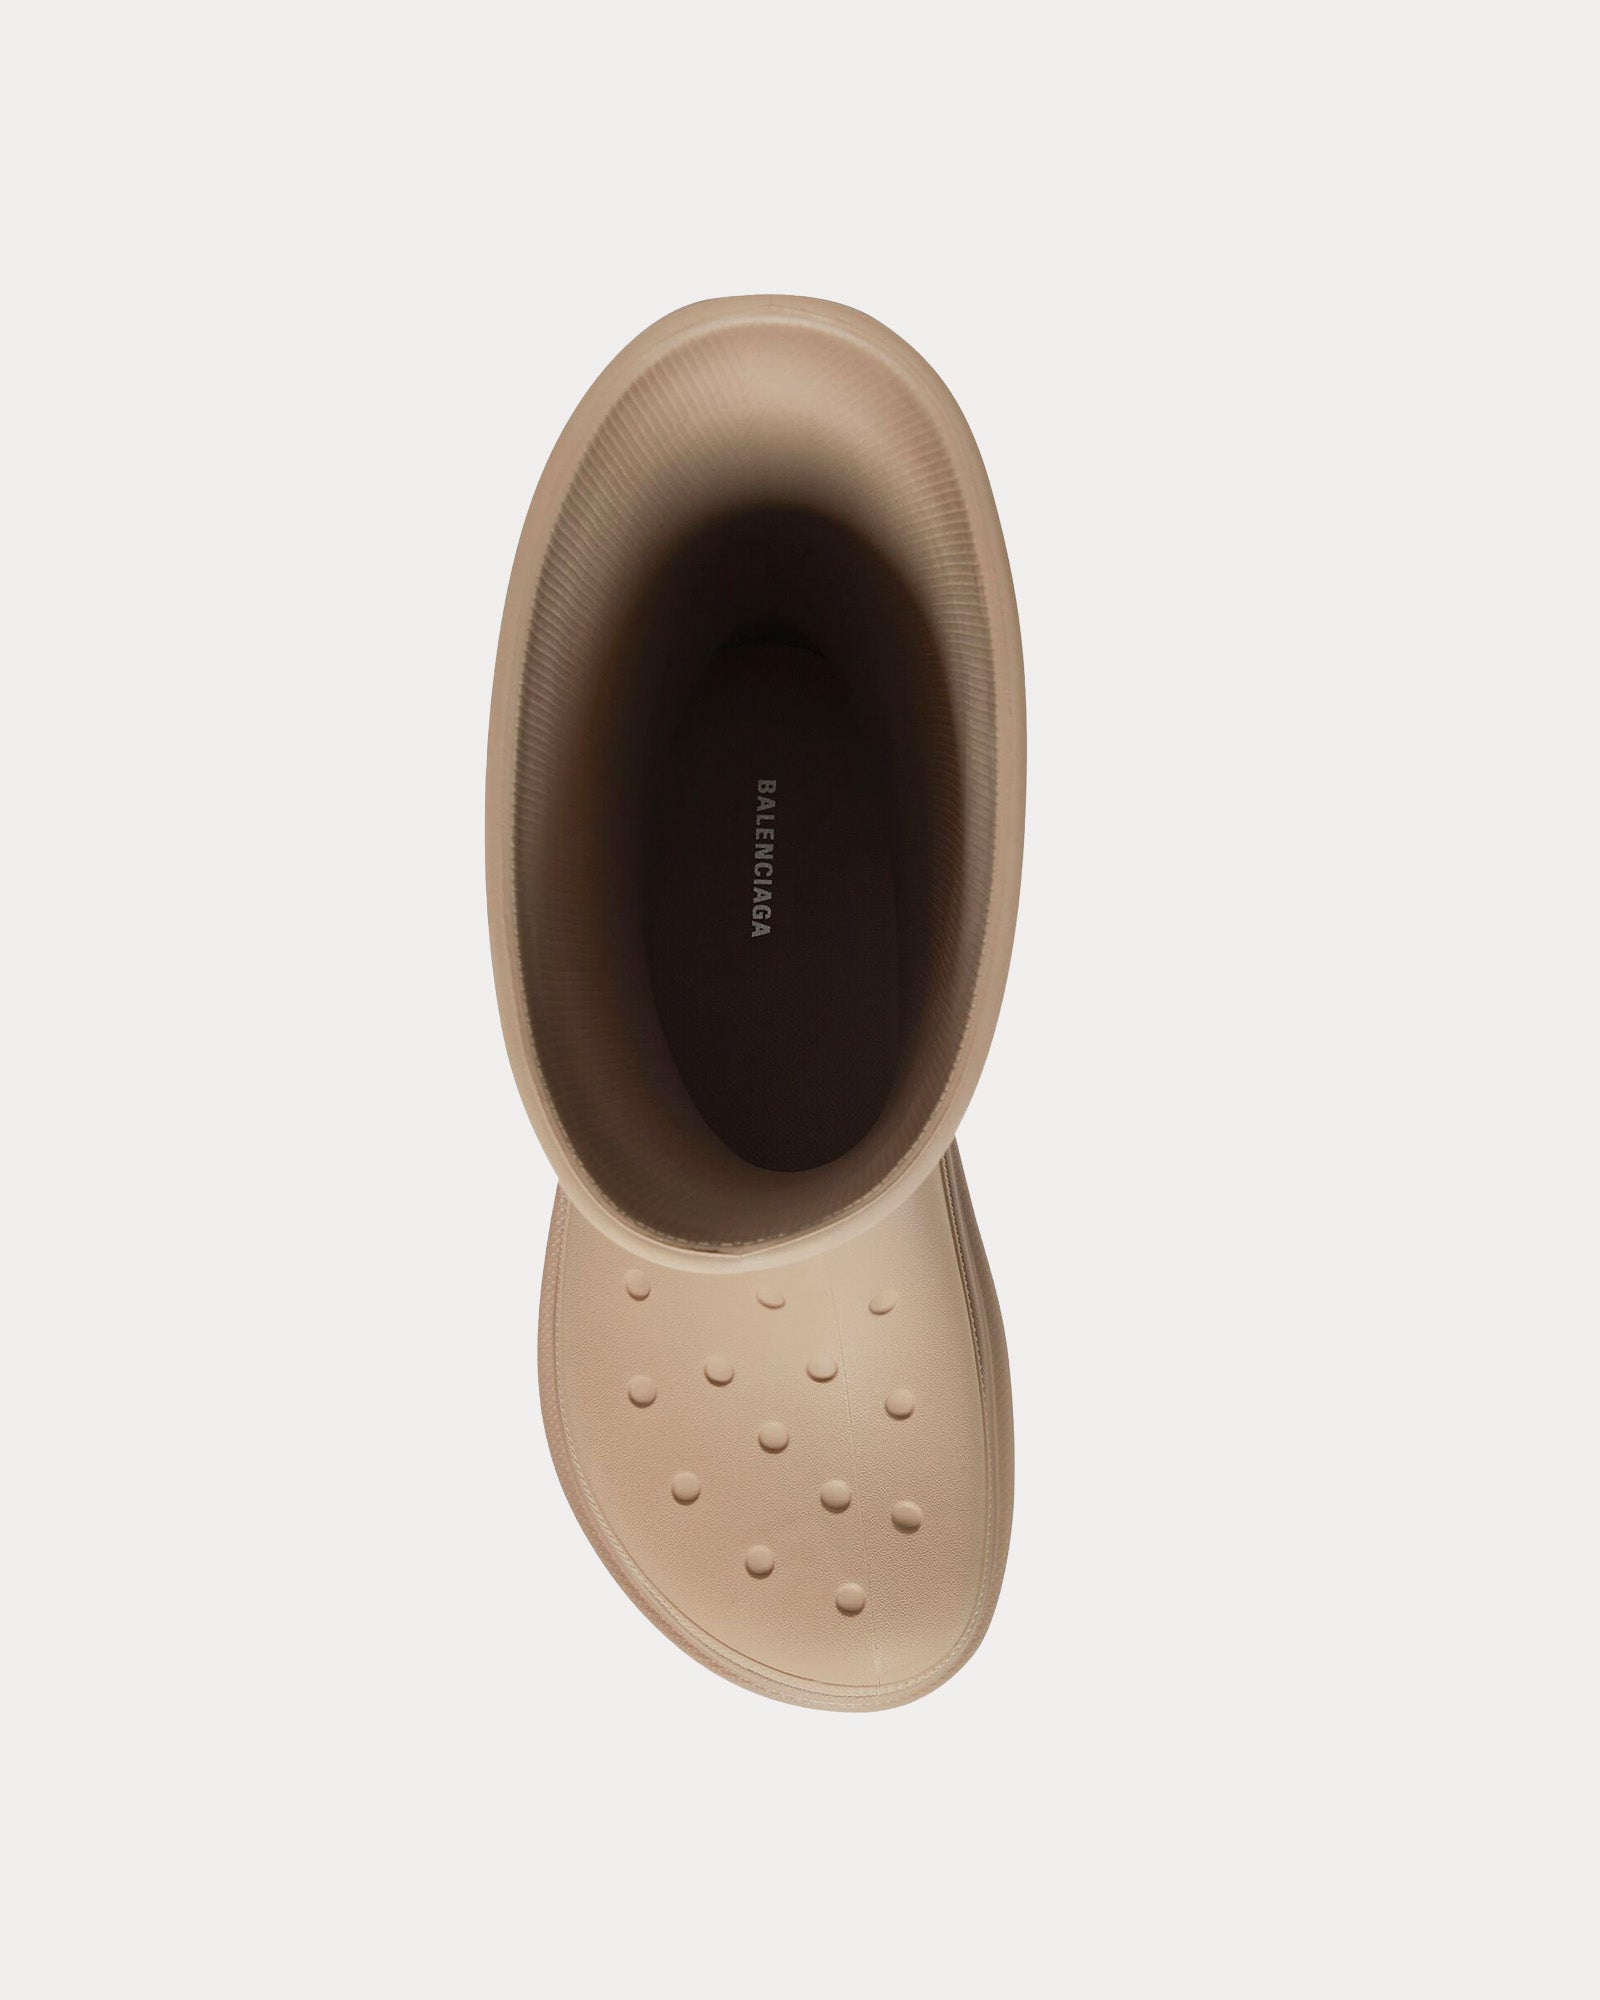 Balenciaga x Crocs - Rubber Beige Boots